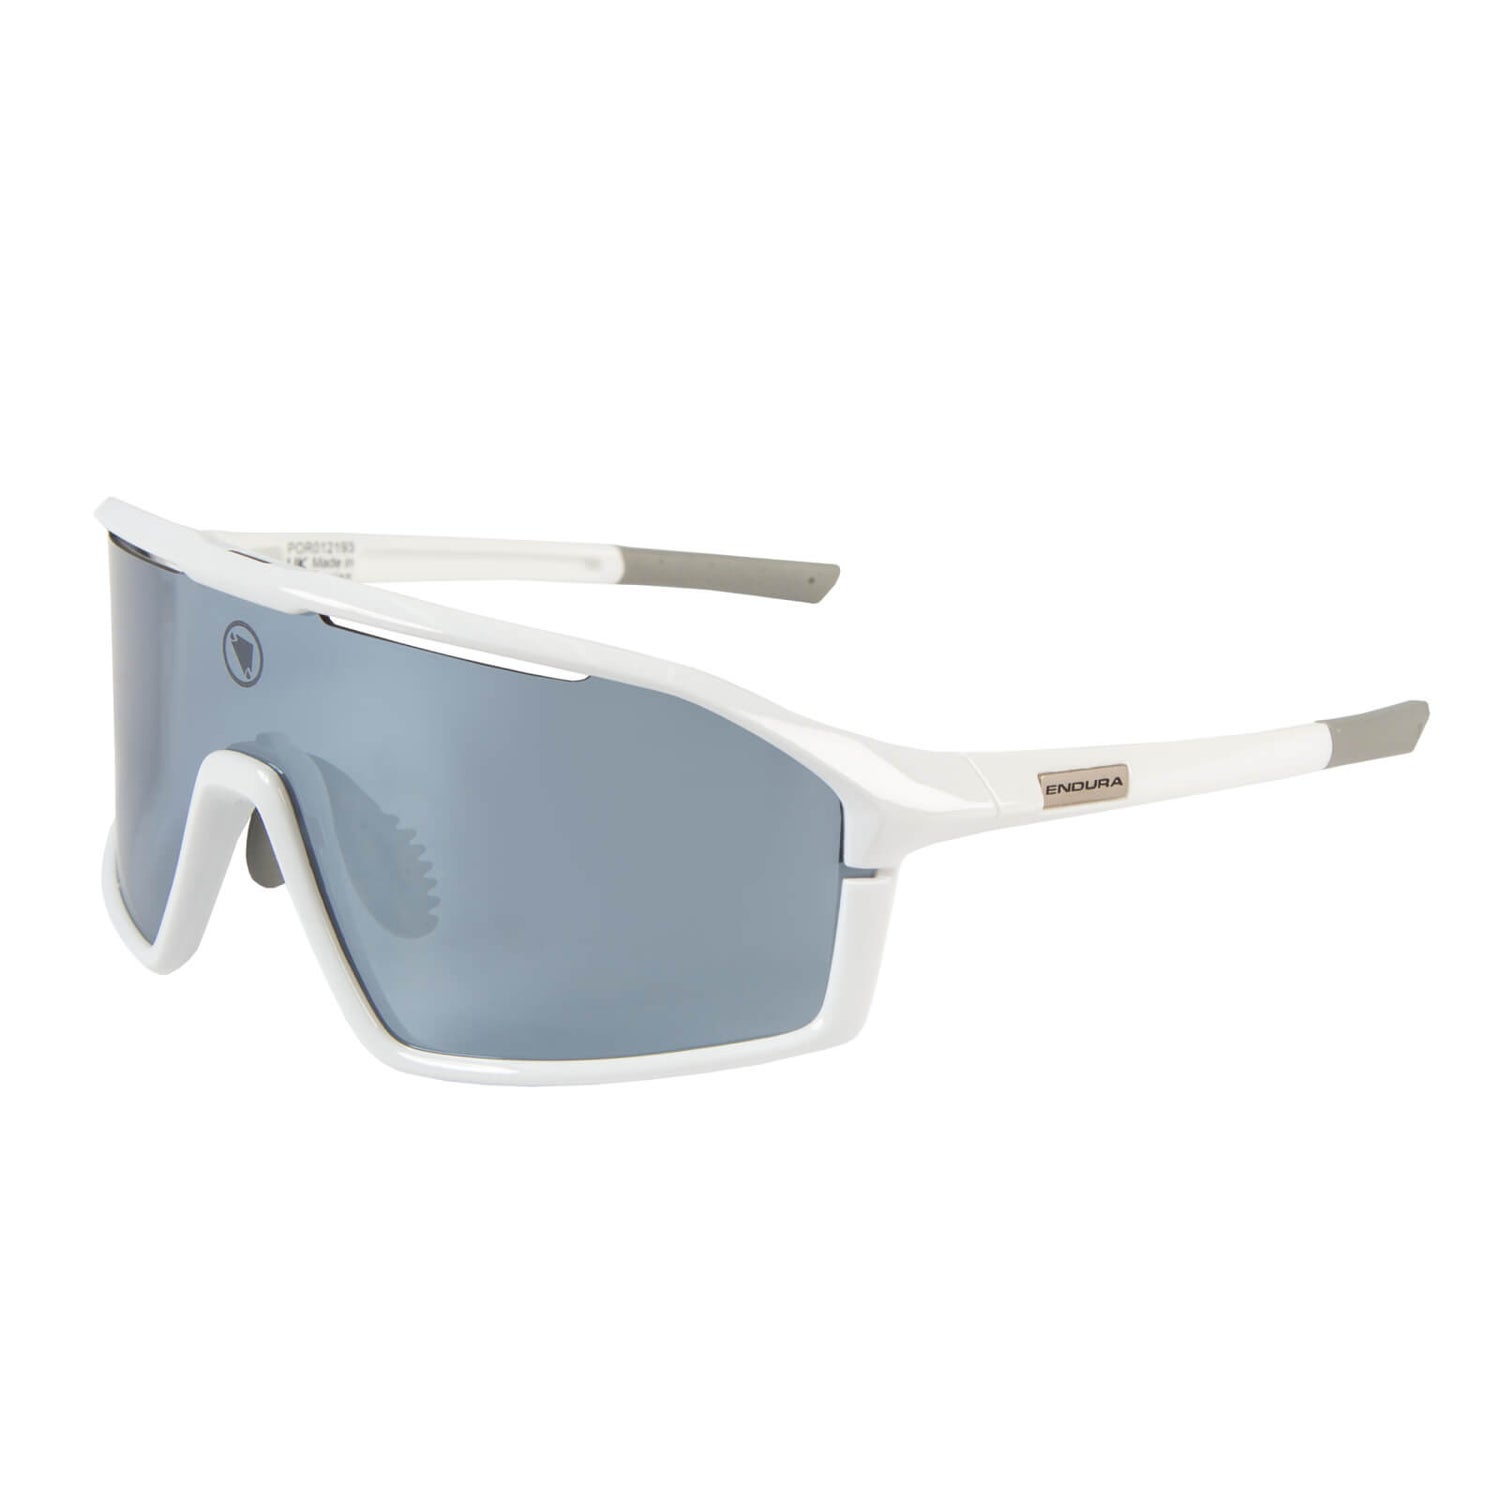 Gabbro II Glasses - White - One Size